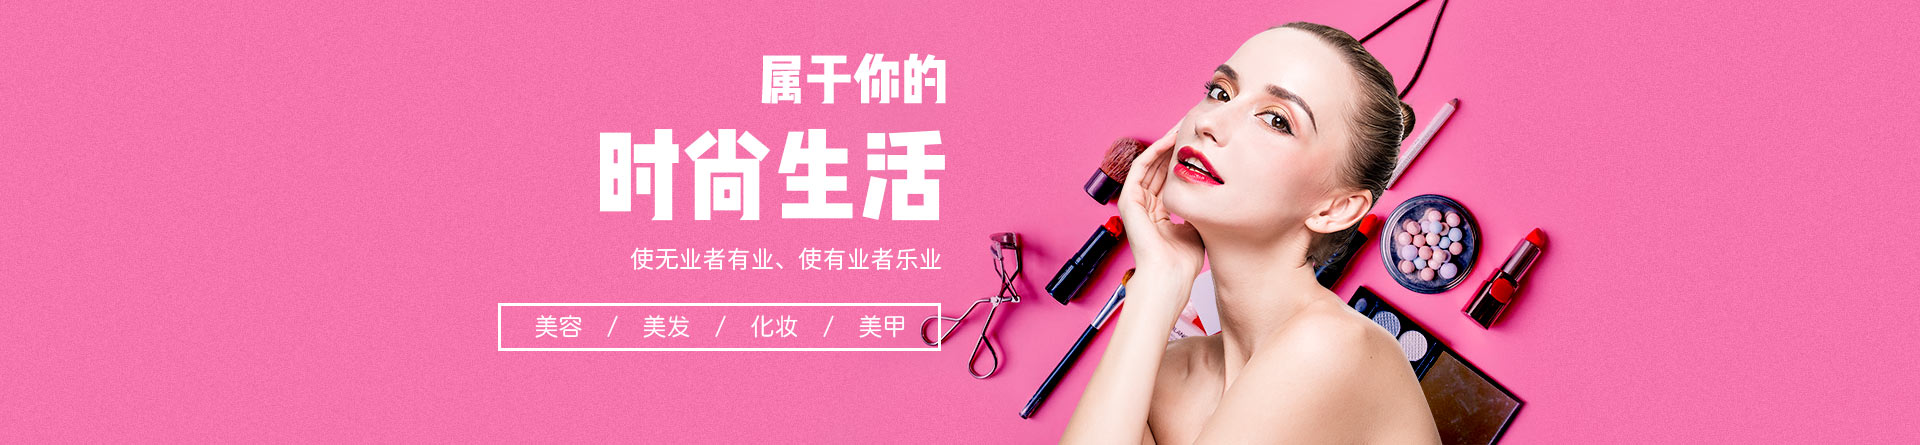 深圳首脑美容美发化妆学校 横幅广告